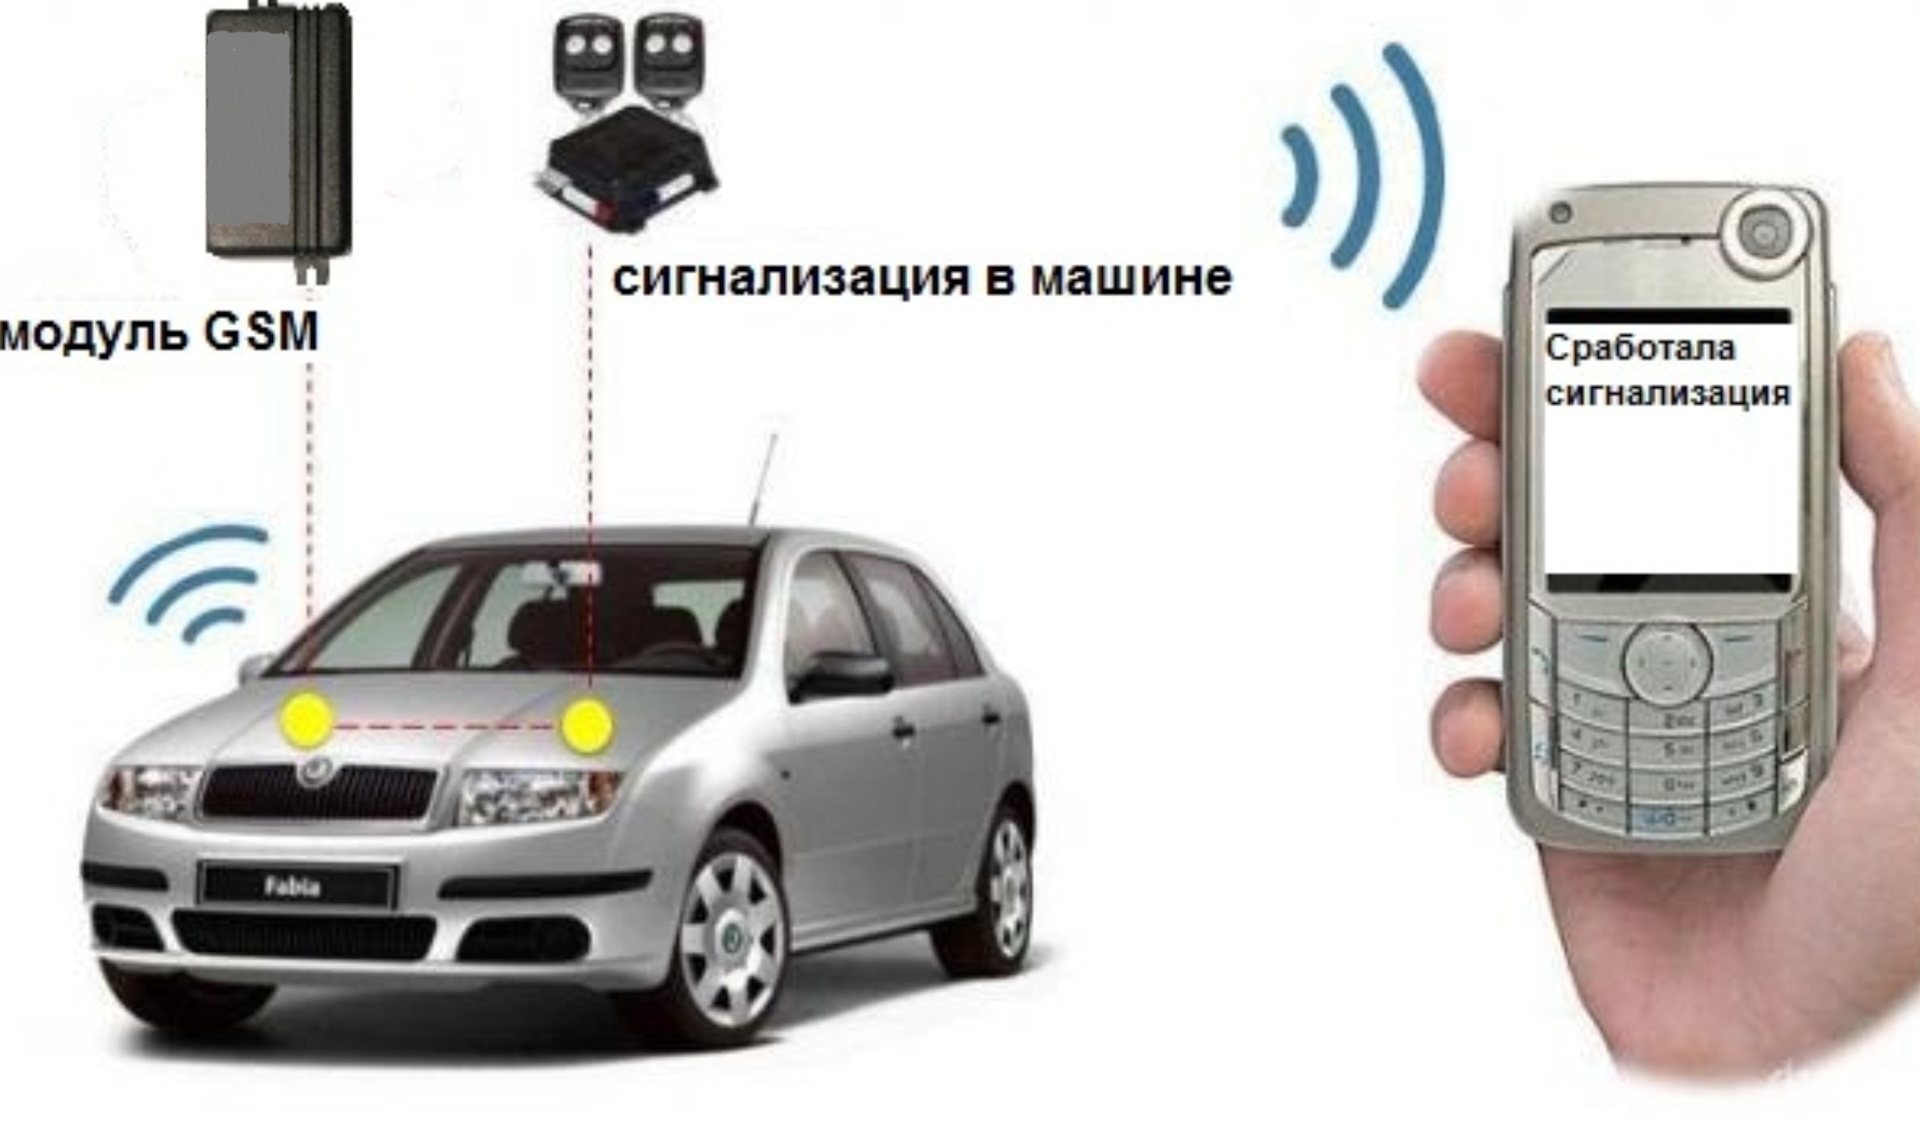 Ремонт сигнализации оповещение. GSM модуль для авто. GSM модуль для сигнализации в авто. Сигнализация с ЖСМ модулем на авто. GSM модуль для оповещения срабатывания сигнализации.